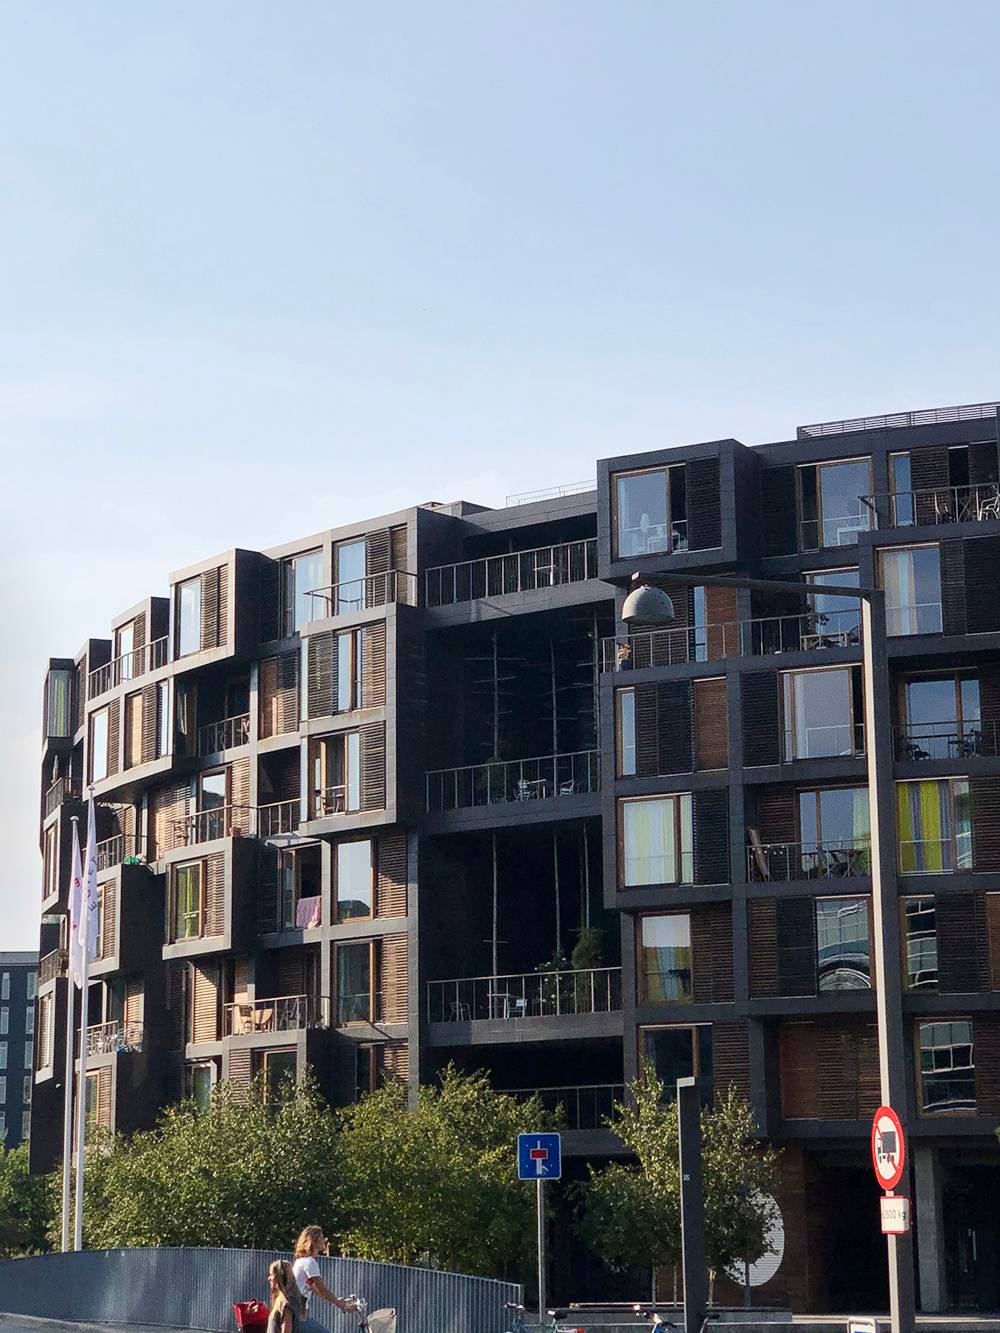 Студенческий городок Тиетген — самое известное общежитие мира, находящееся в Копенгагене. Его&nbsp;архитектура меня поразила